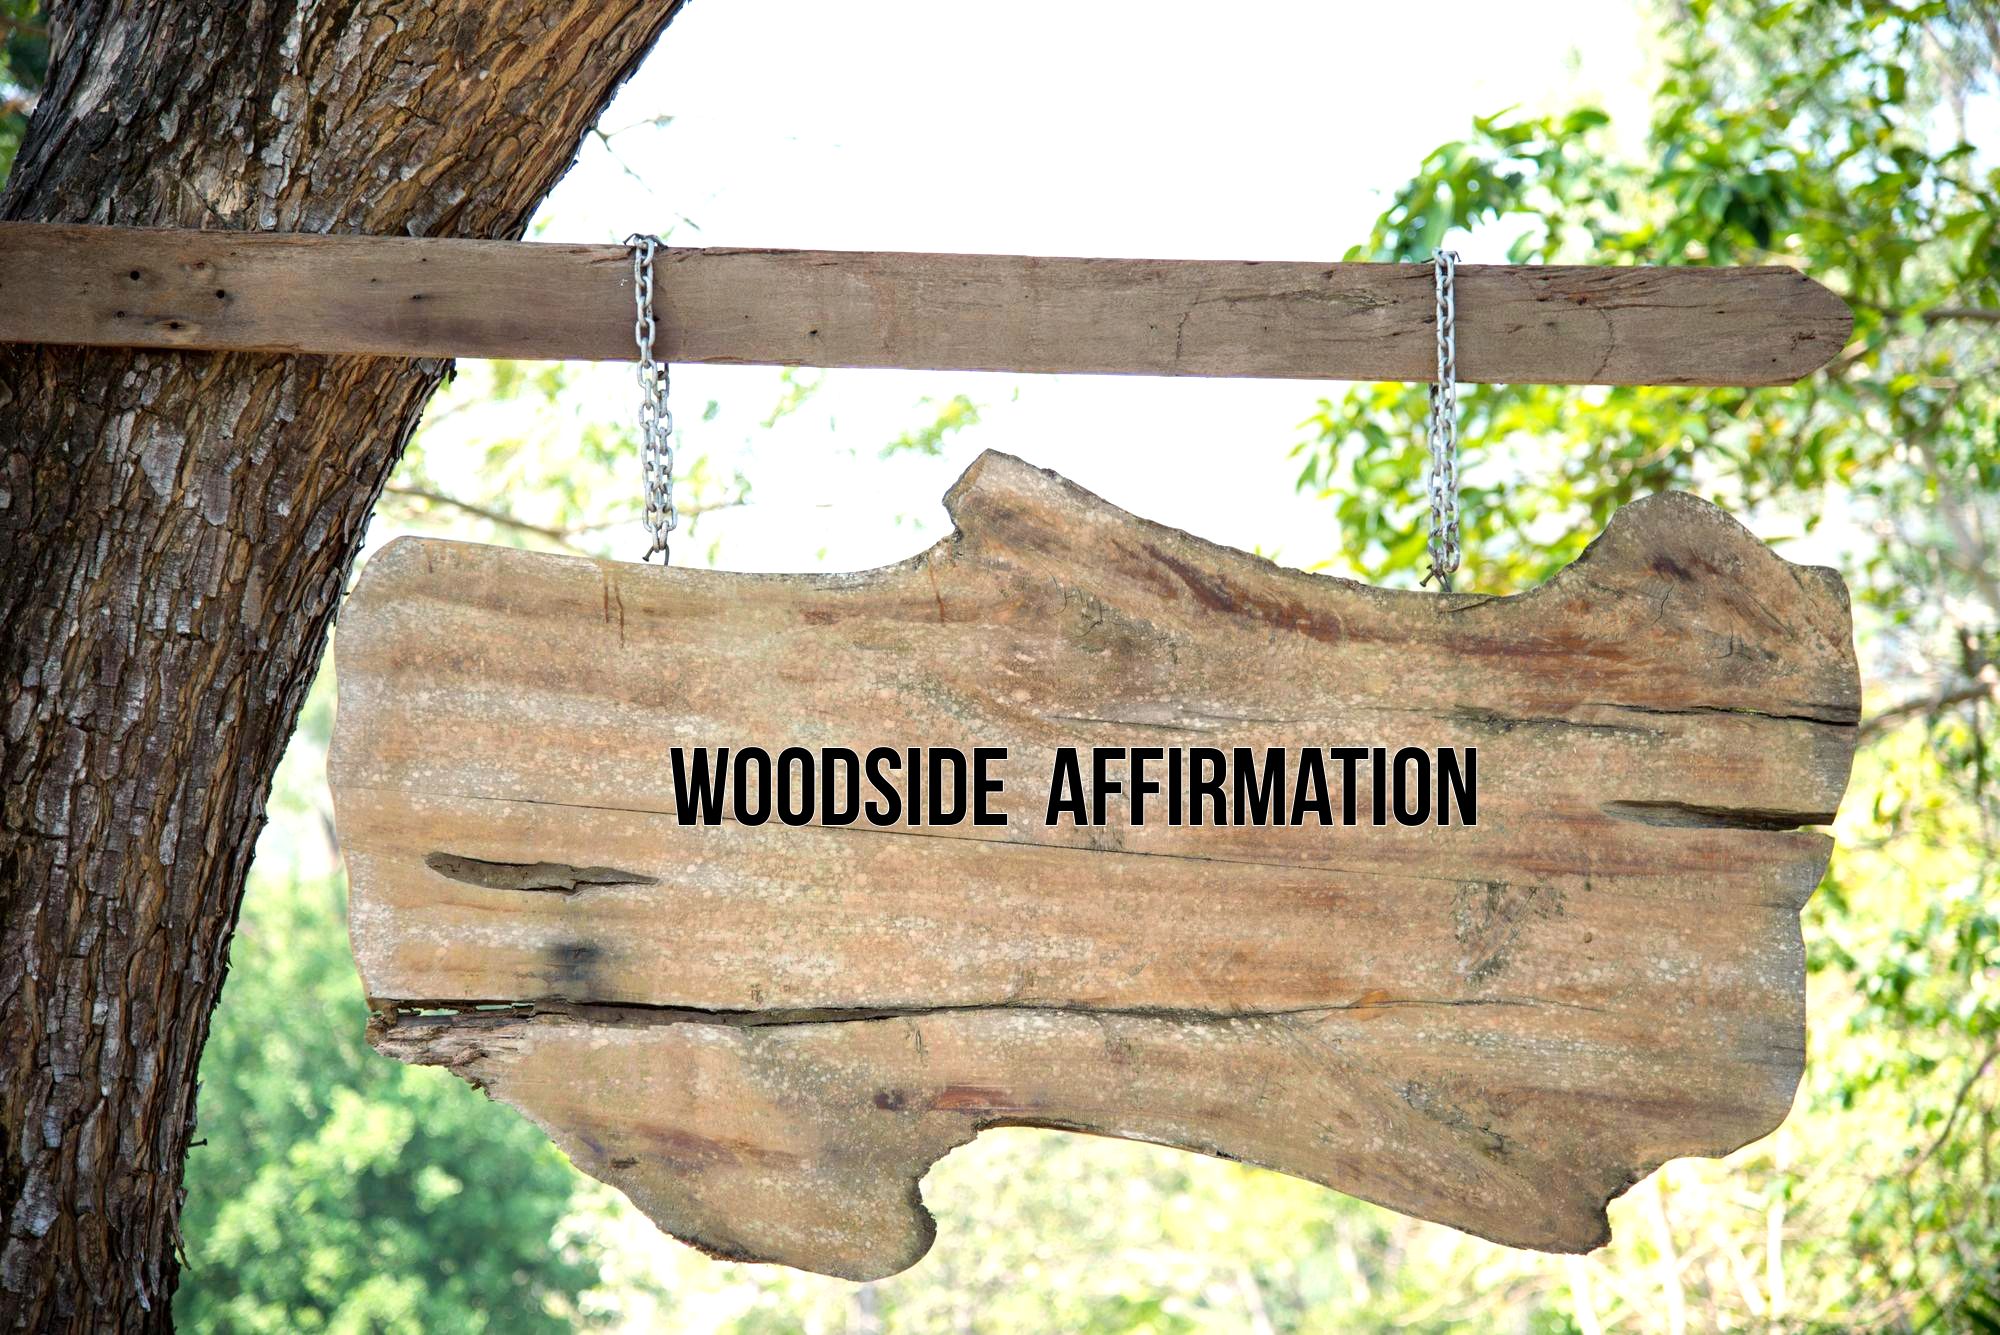 Woodside affirmation-philosophy park